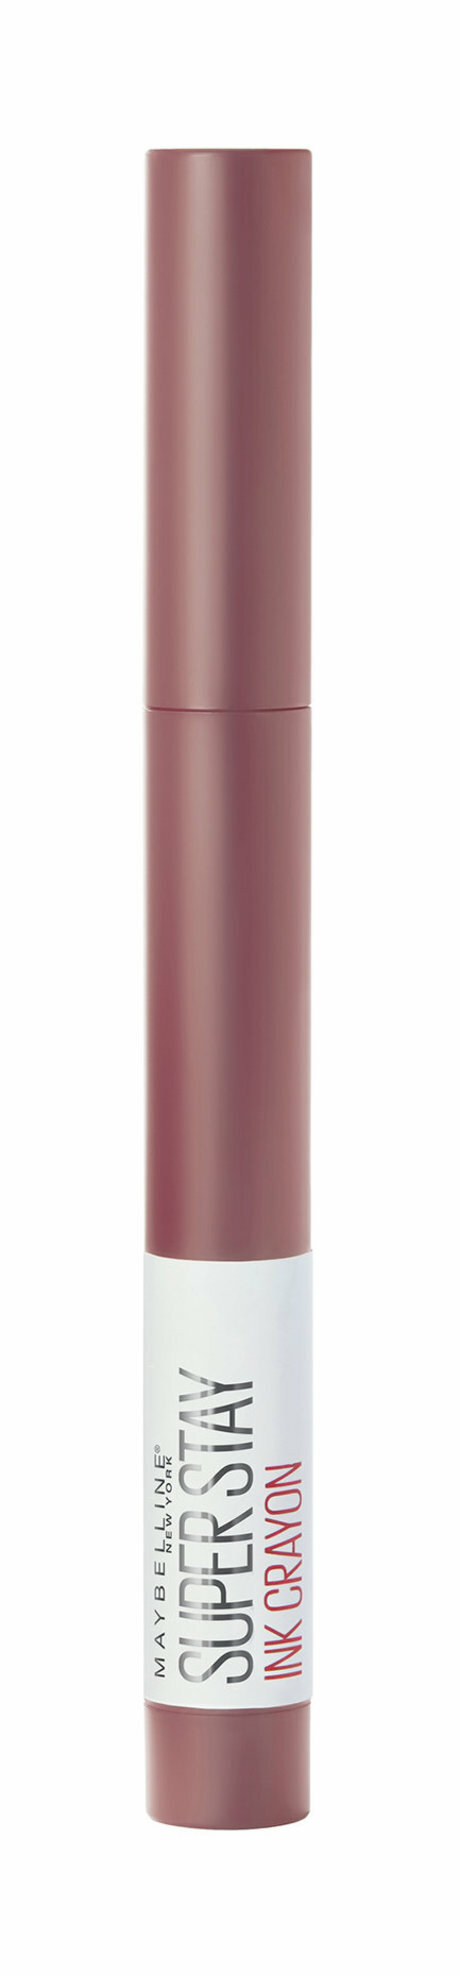 Суперстойкая помада-стик для губ Maybelline New York Superstay Ink Crayon оттенок 10 Верь своим чувствам 1.5гр - фото №13